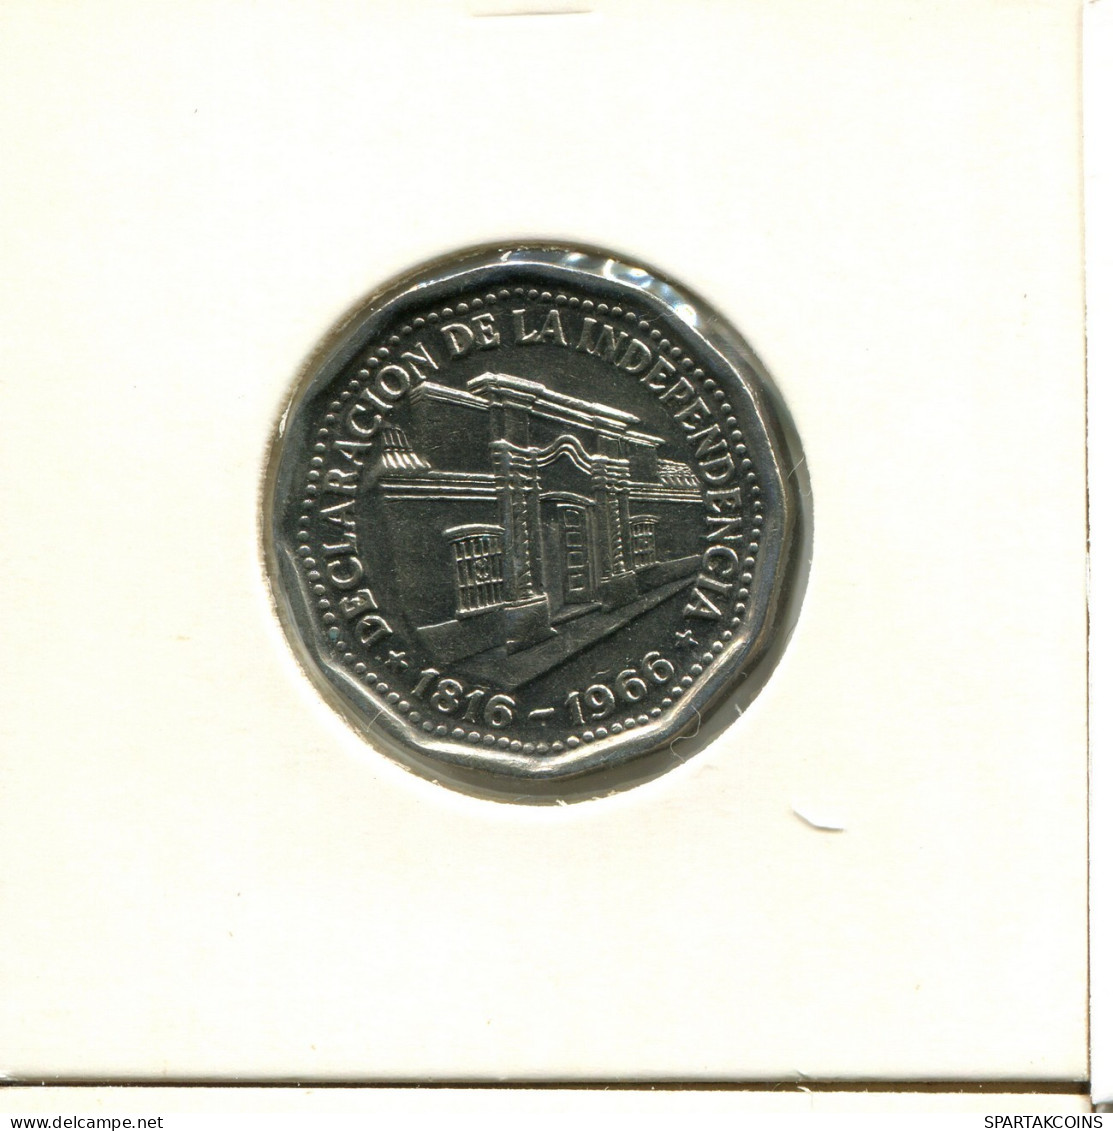 10 PESOS 1966 ARGENTINA Moneda #AX304.E.A - Argentine